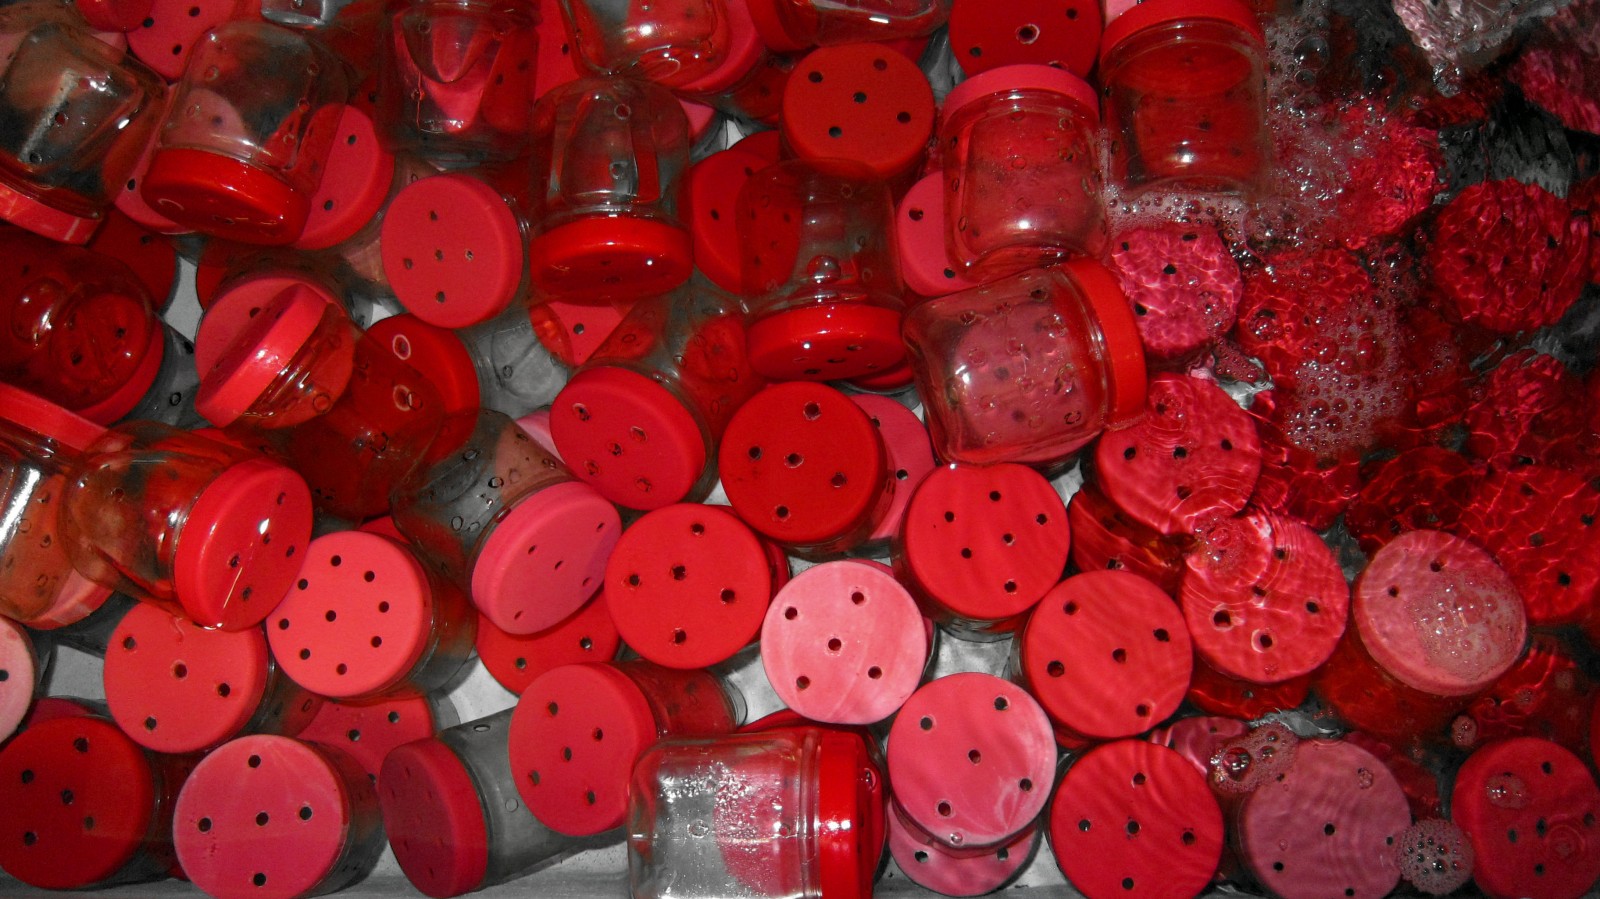 jars-for-isolating-reef-species.jpg